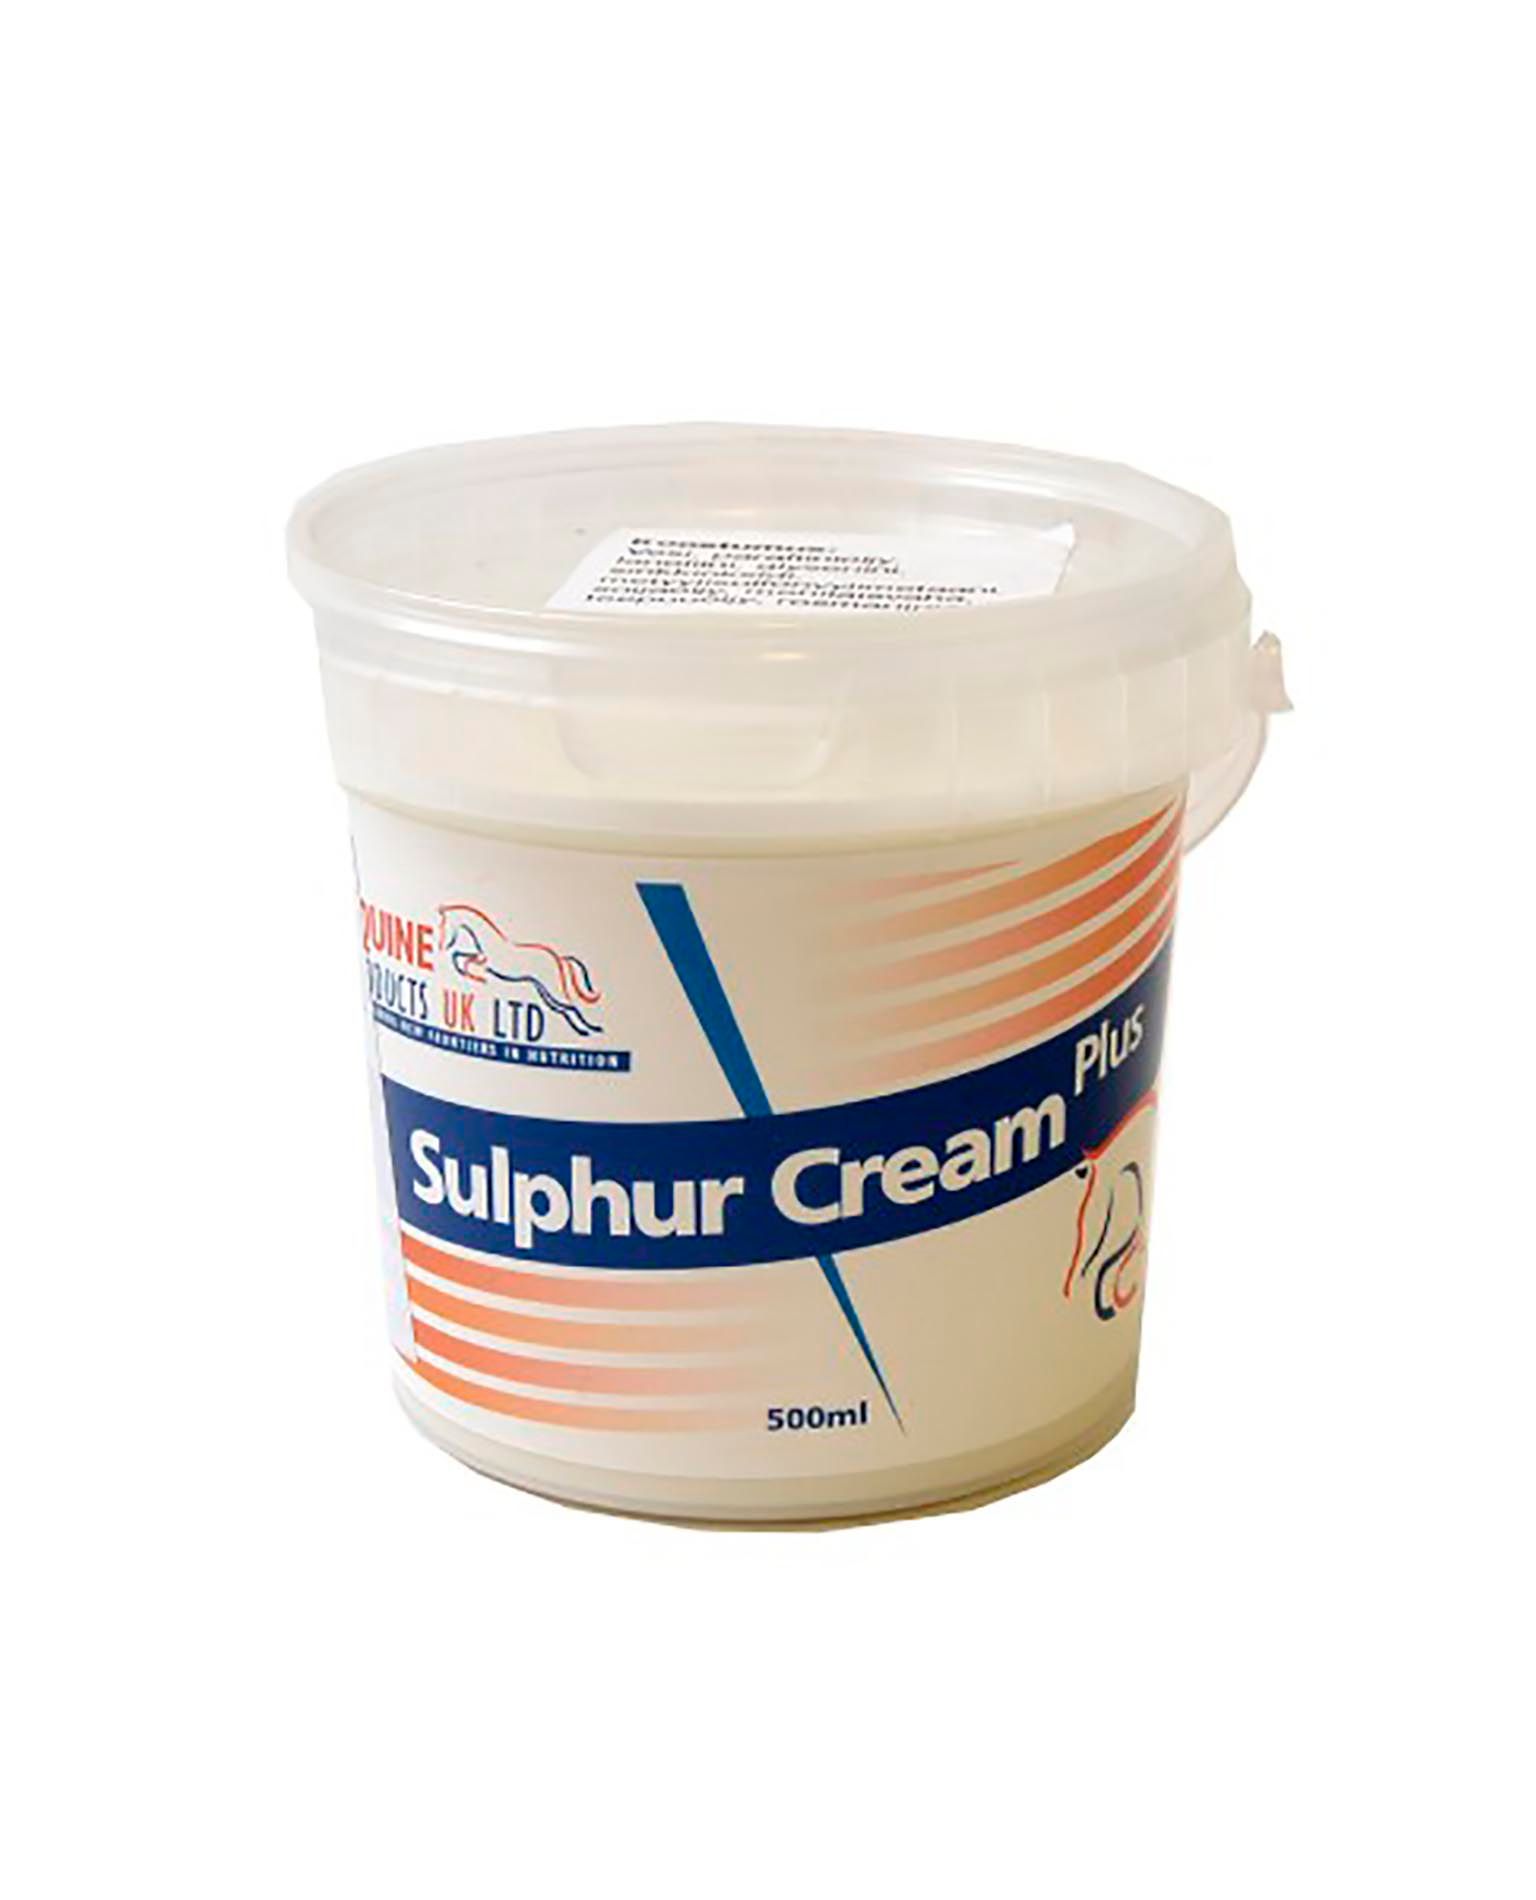 sulfur cream